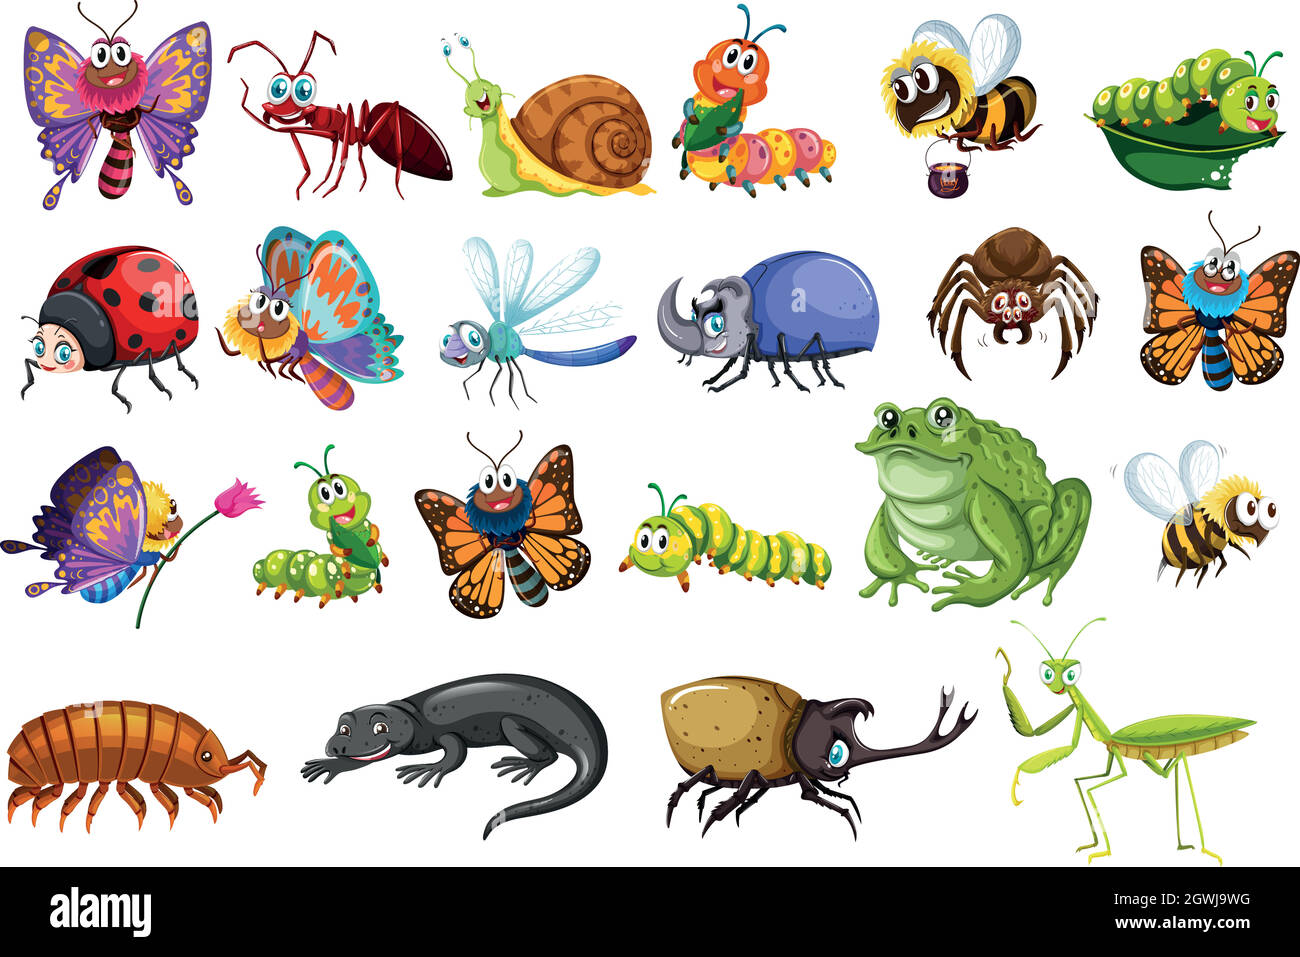 Insektengruppe mit Schmetterlingen, Ameisen, Käfer, Eidechsen, Fröschen und Bienen Stock Vektor